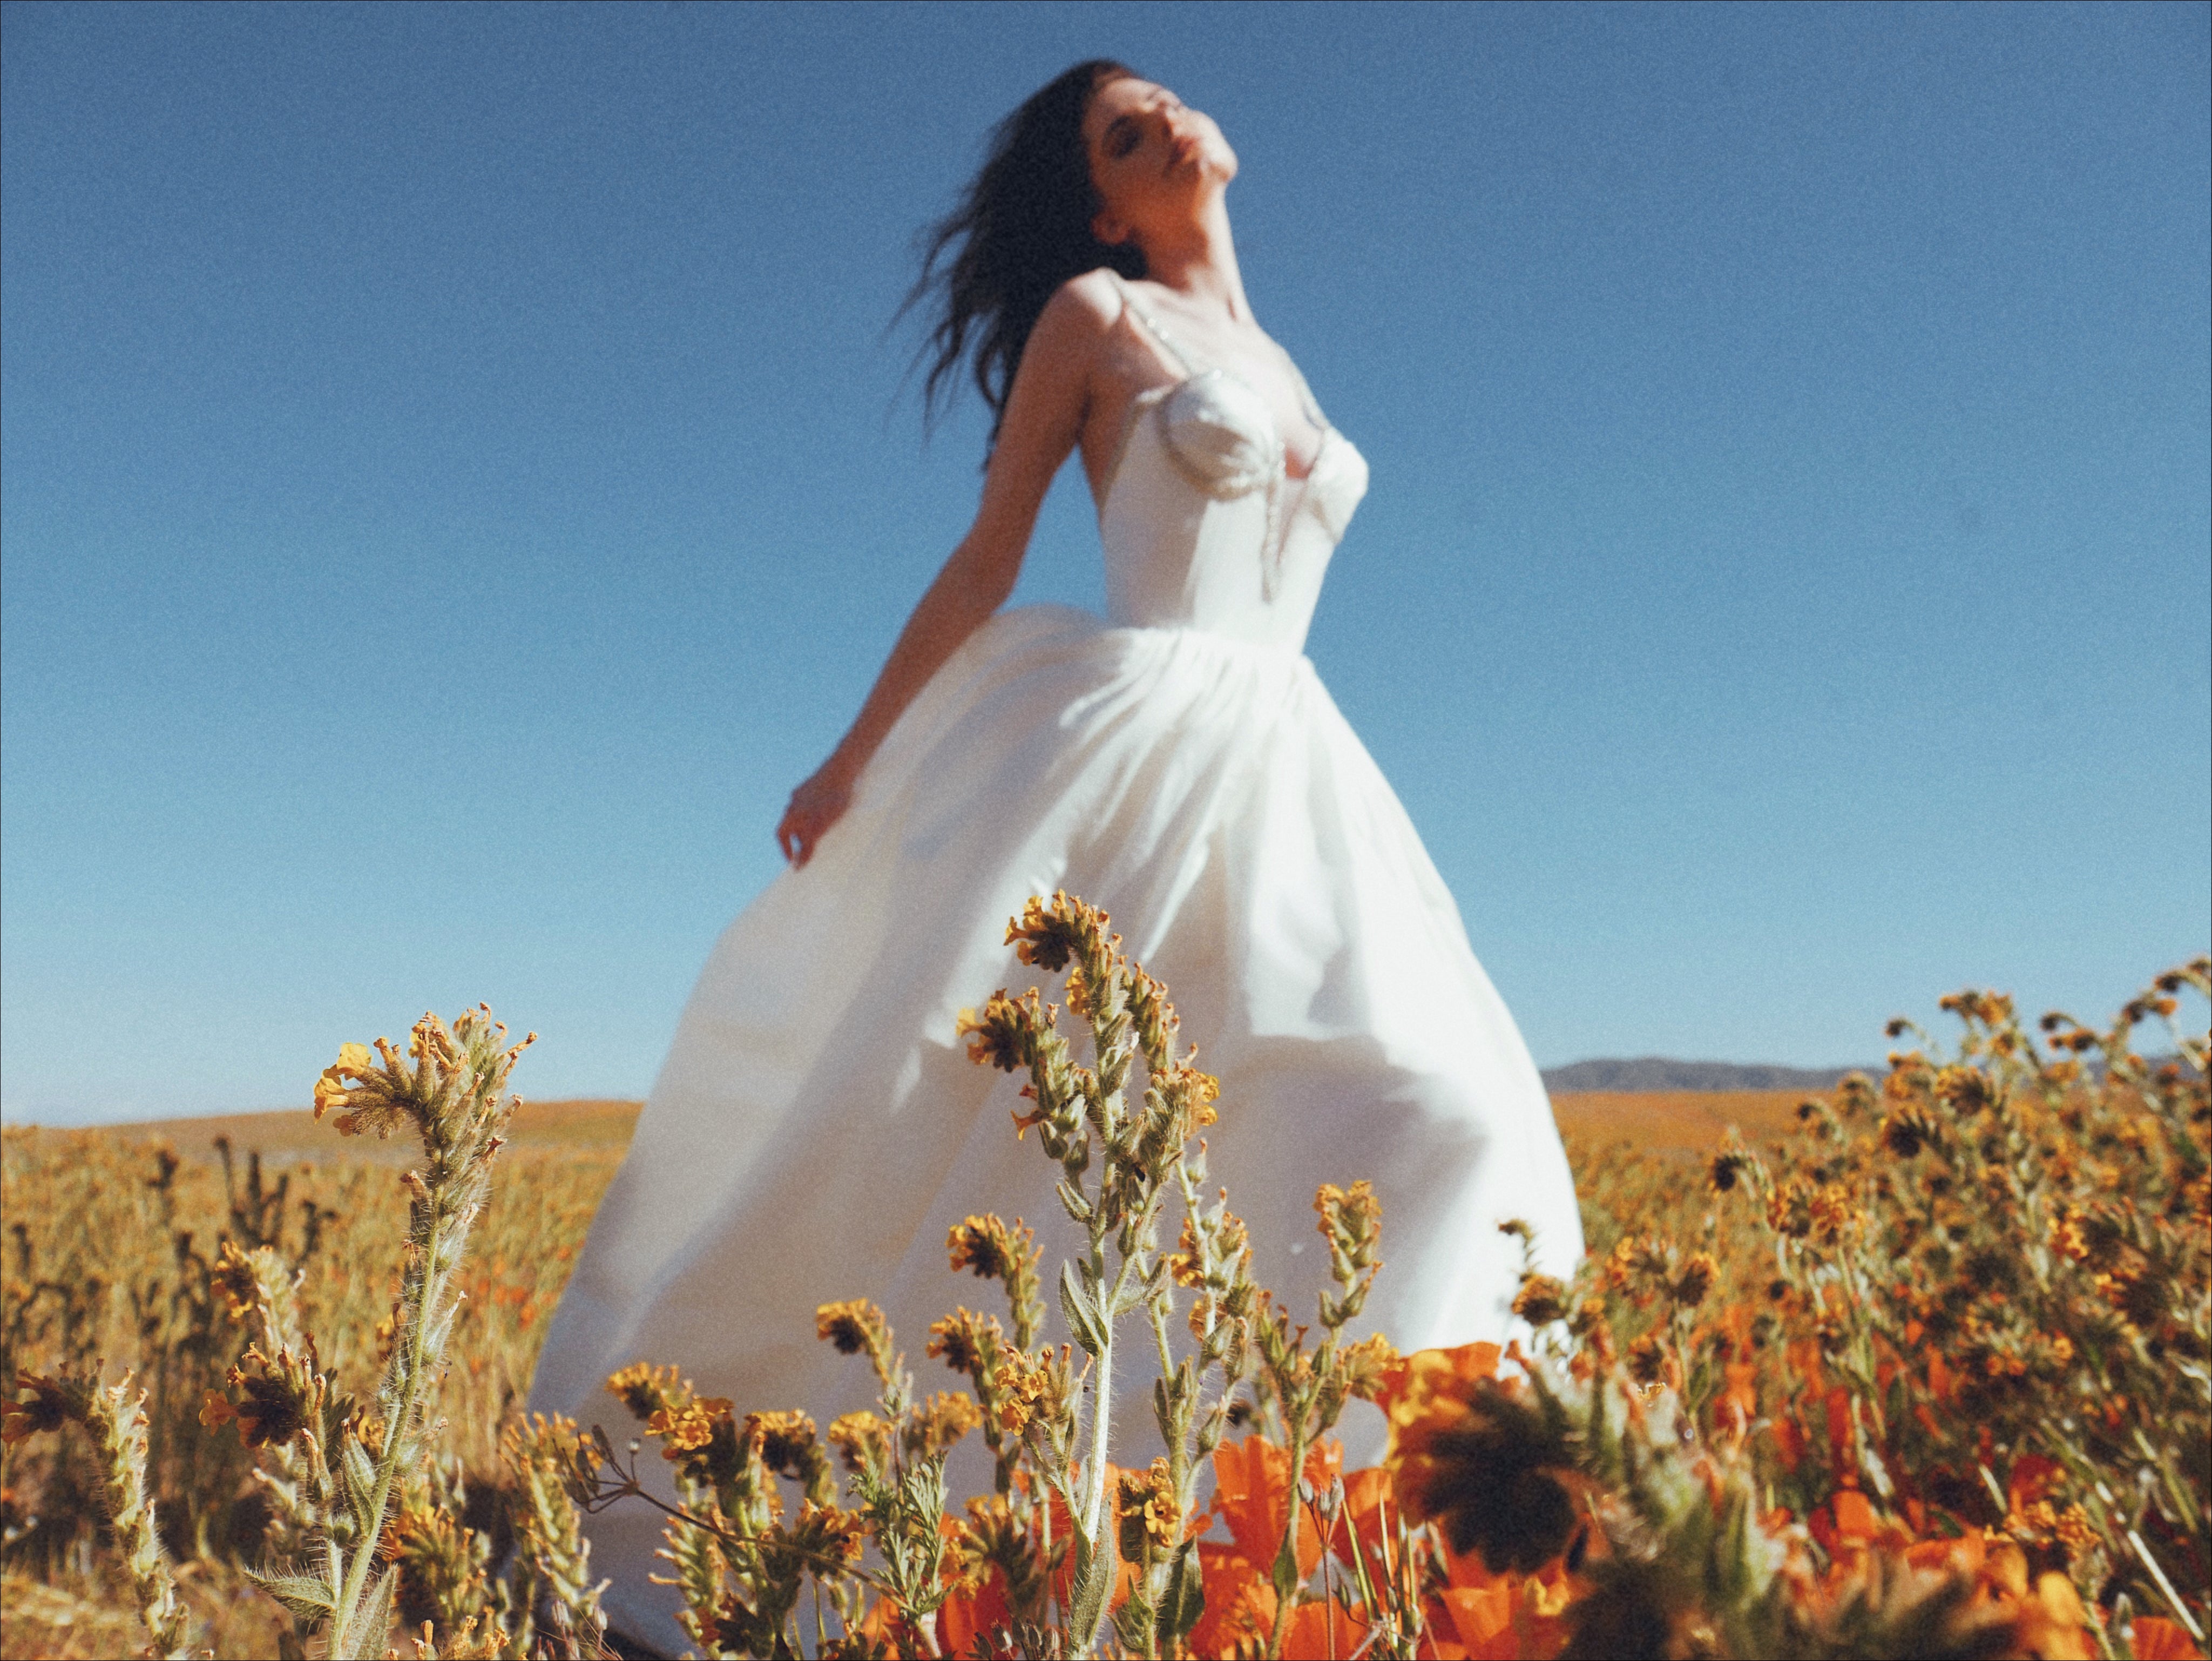 A model wears a romantic silk taffeta ball gown wedding dress in a field of poppies